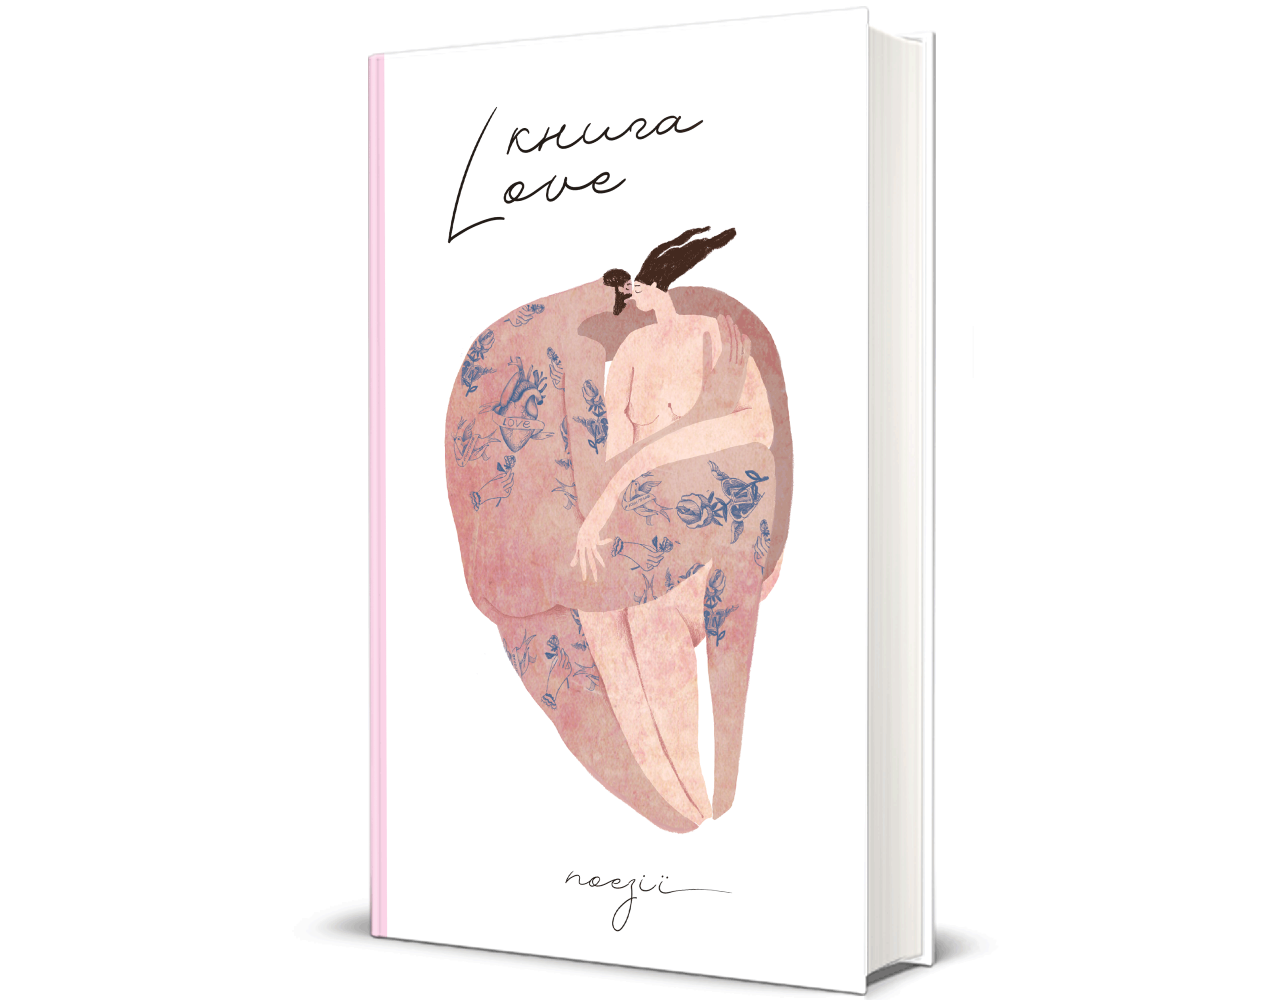 Одна з найромантичніших книг сучасності - це збірка віршів про кохання «Книга Love». Фото: knigolove.ua 